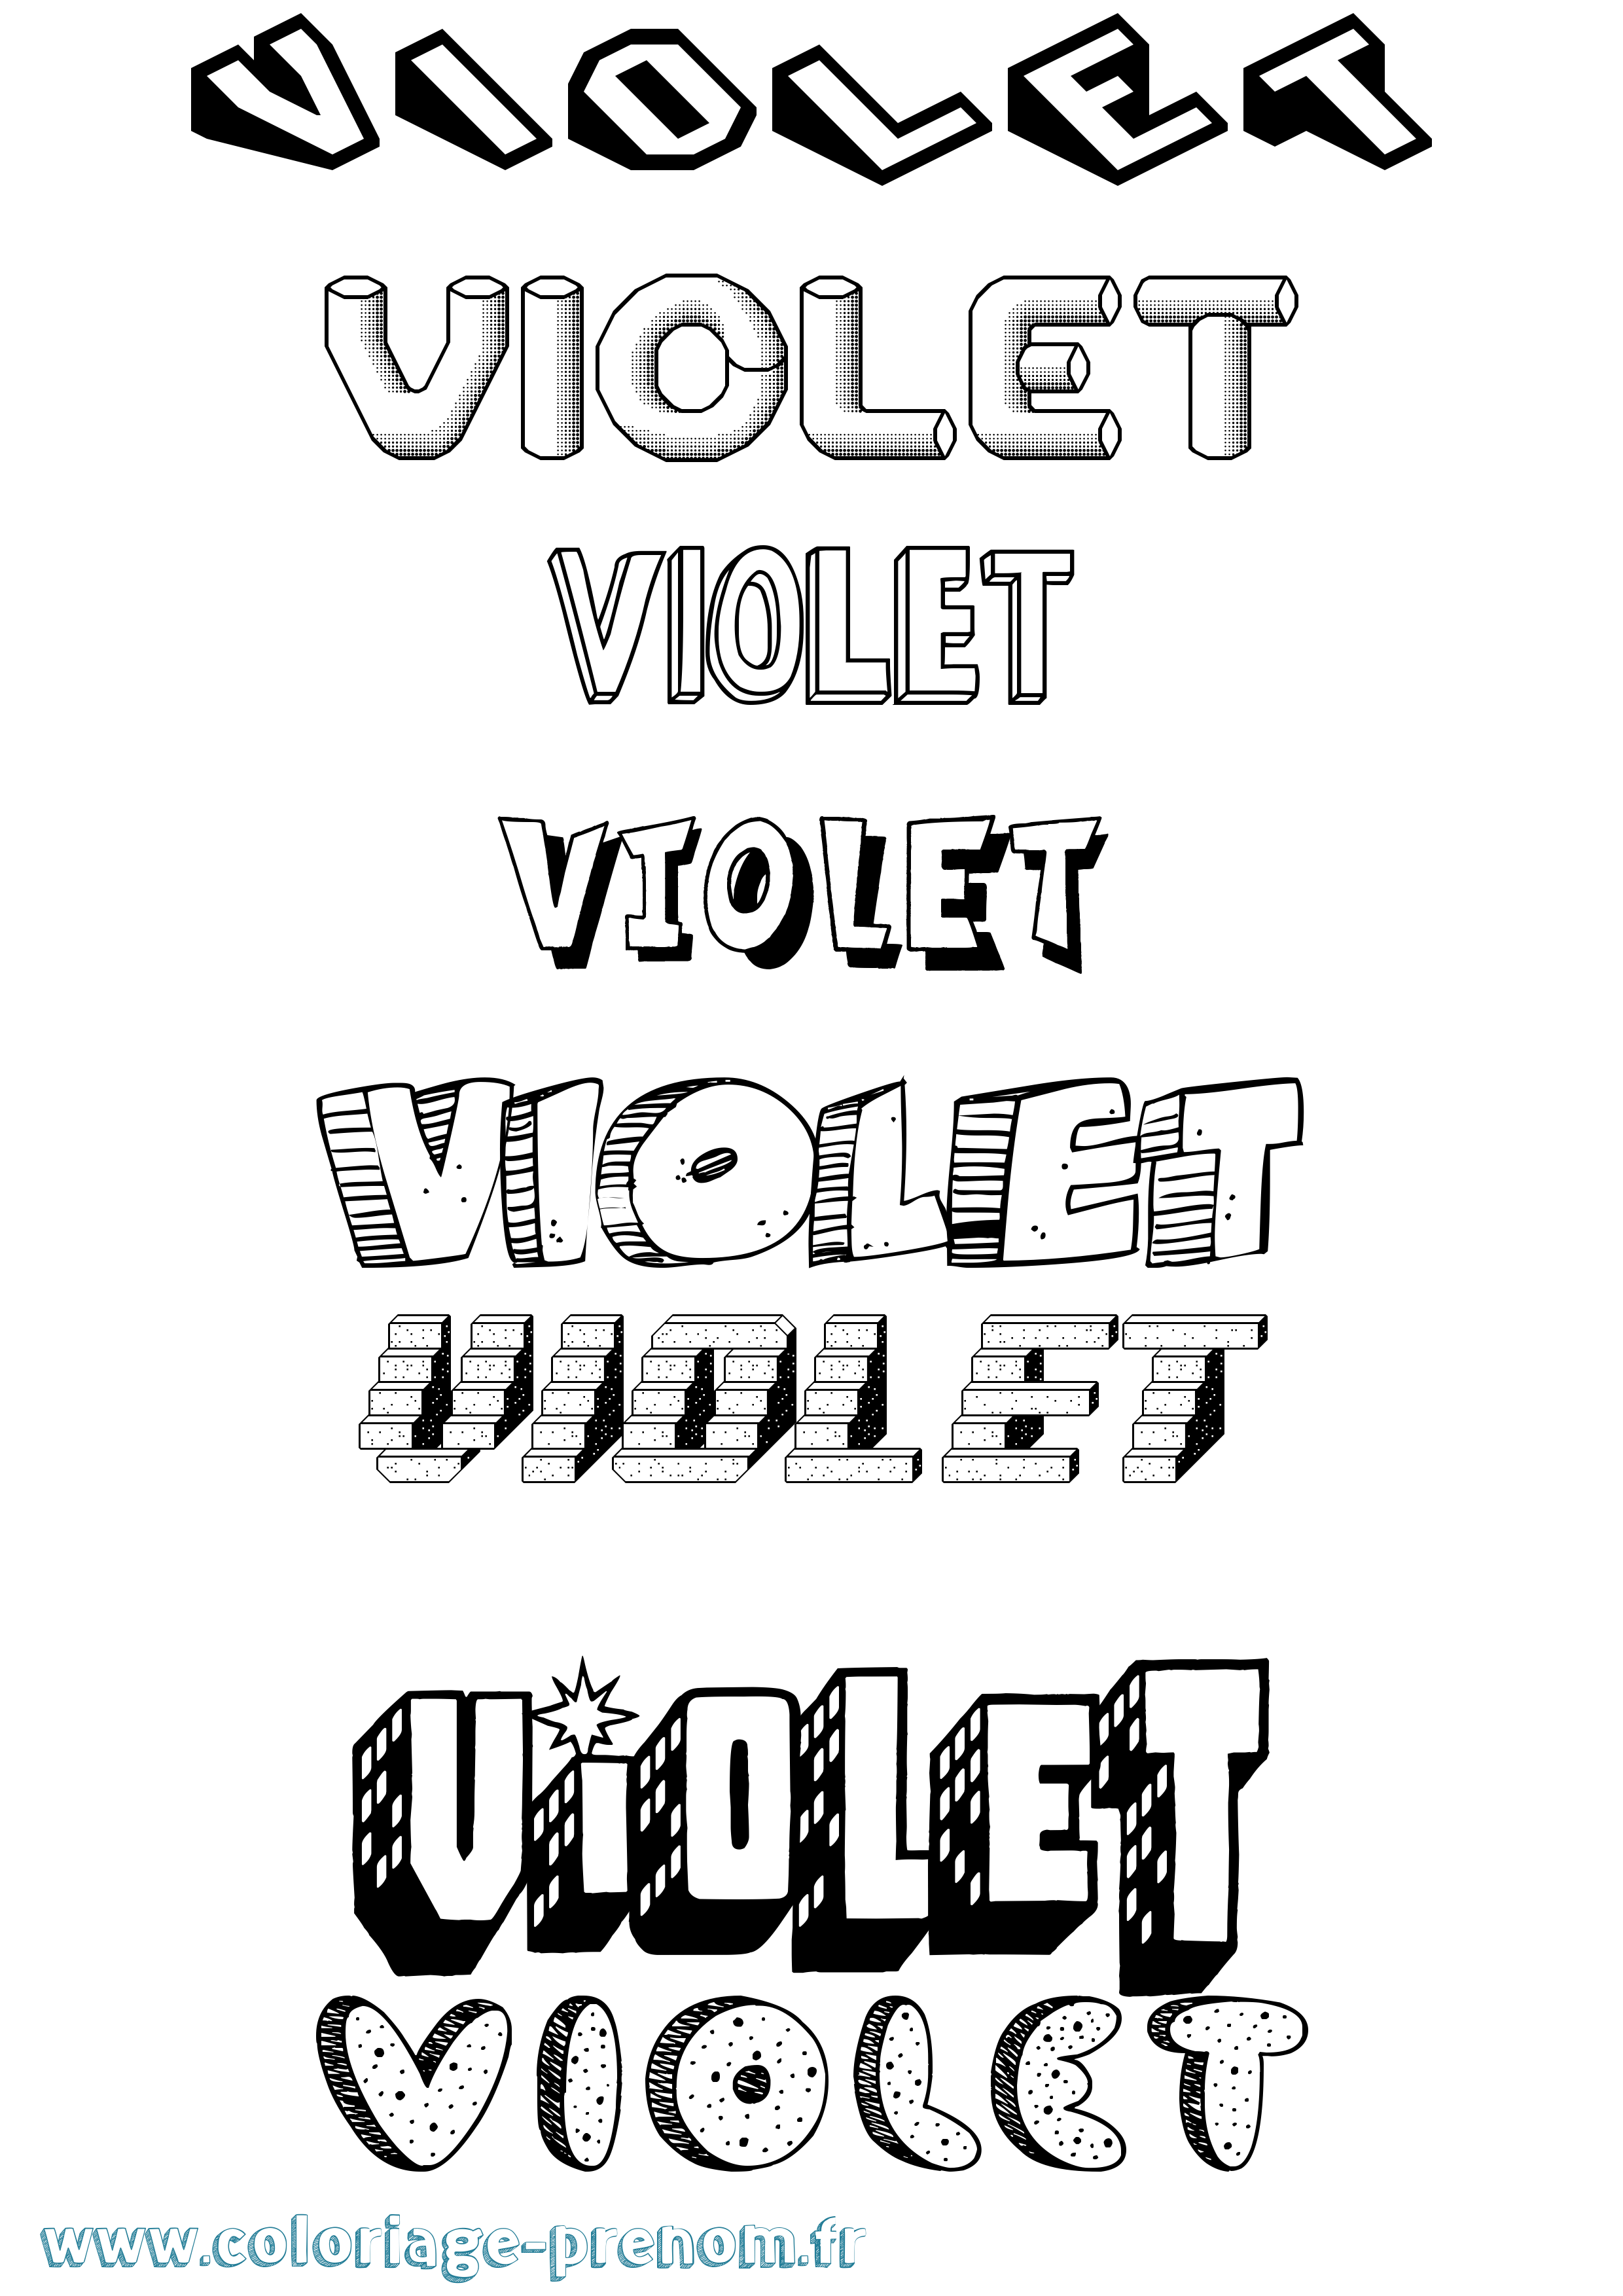 Coloriage prénom Violet Effet 3D